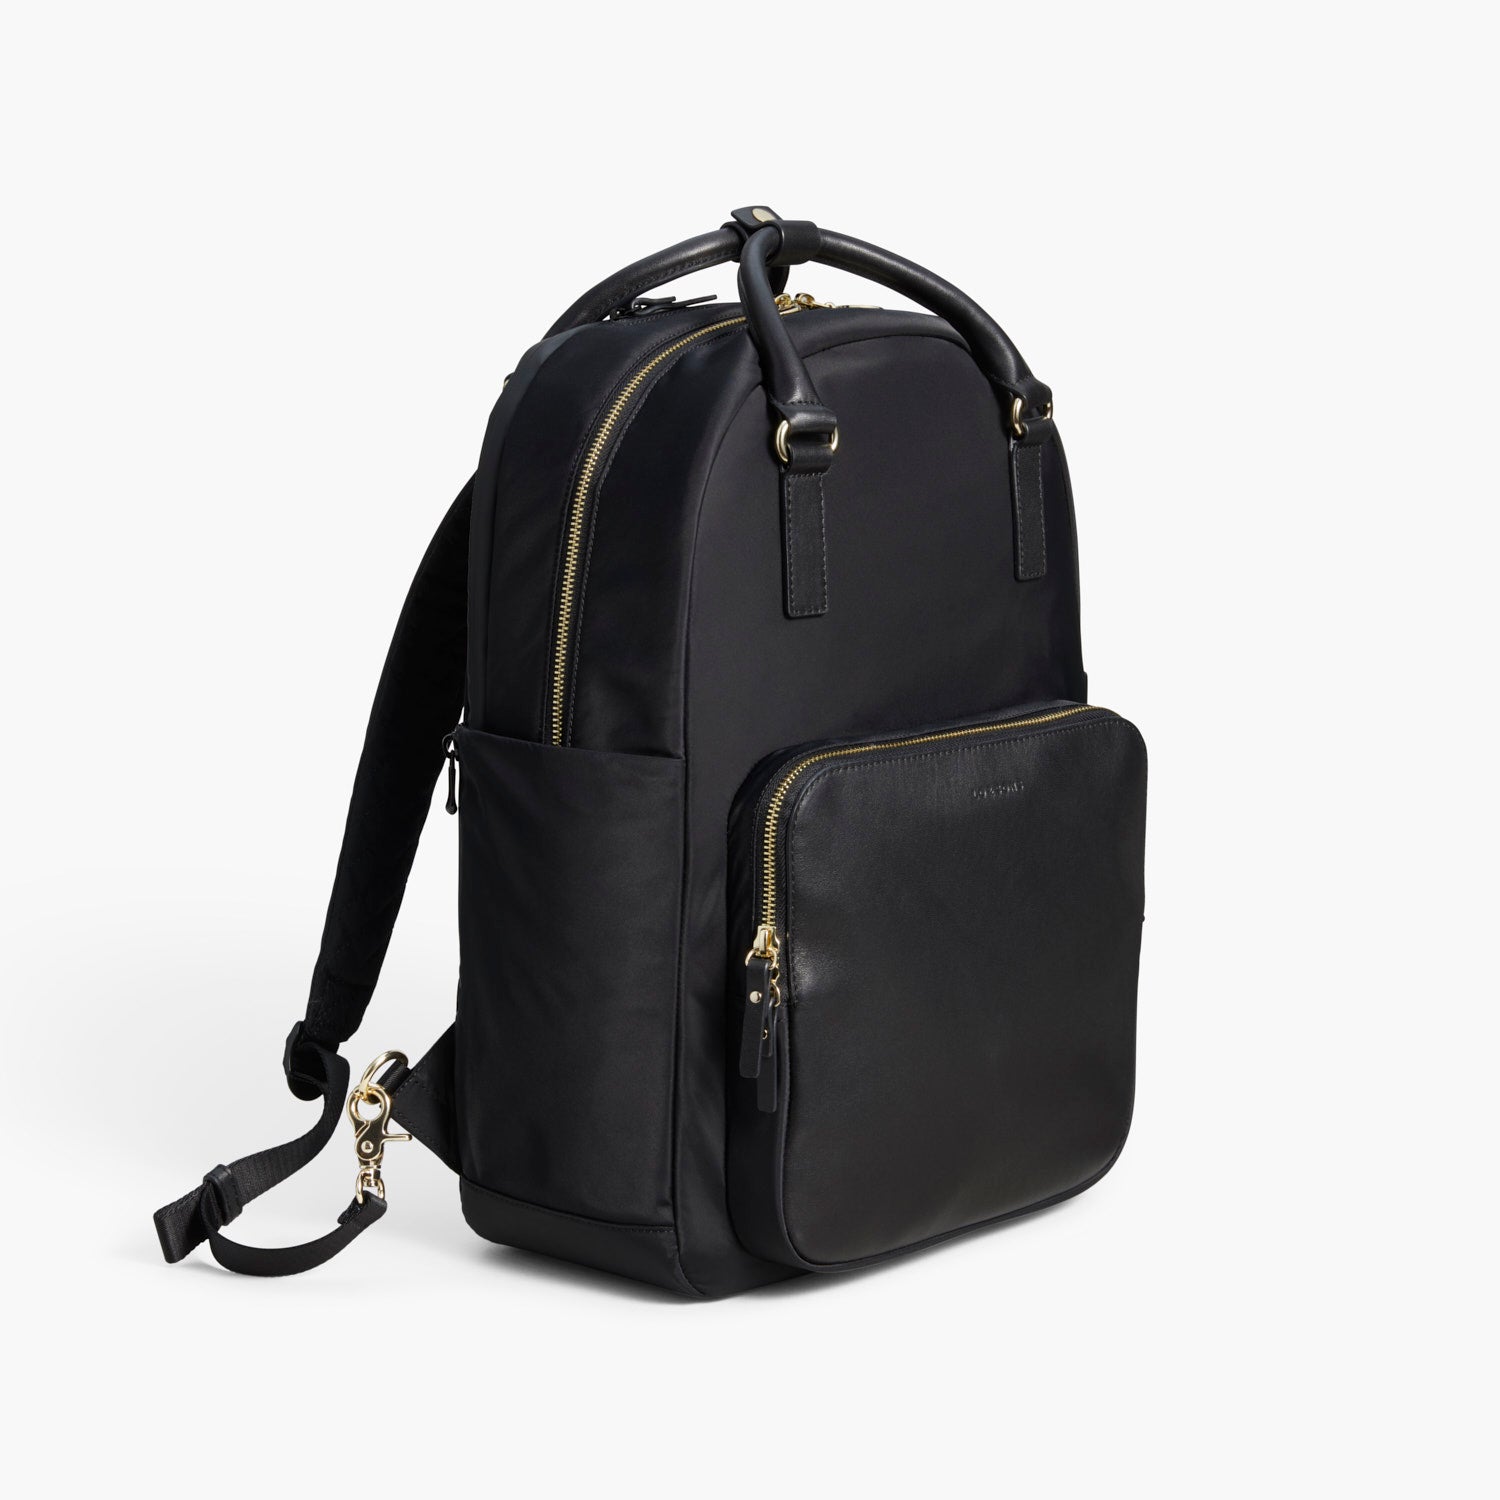 Black Leather Laptop Bag - Single Zipper Compartment